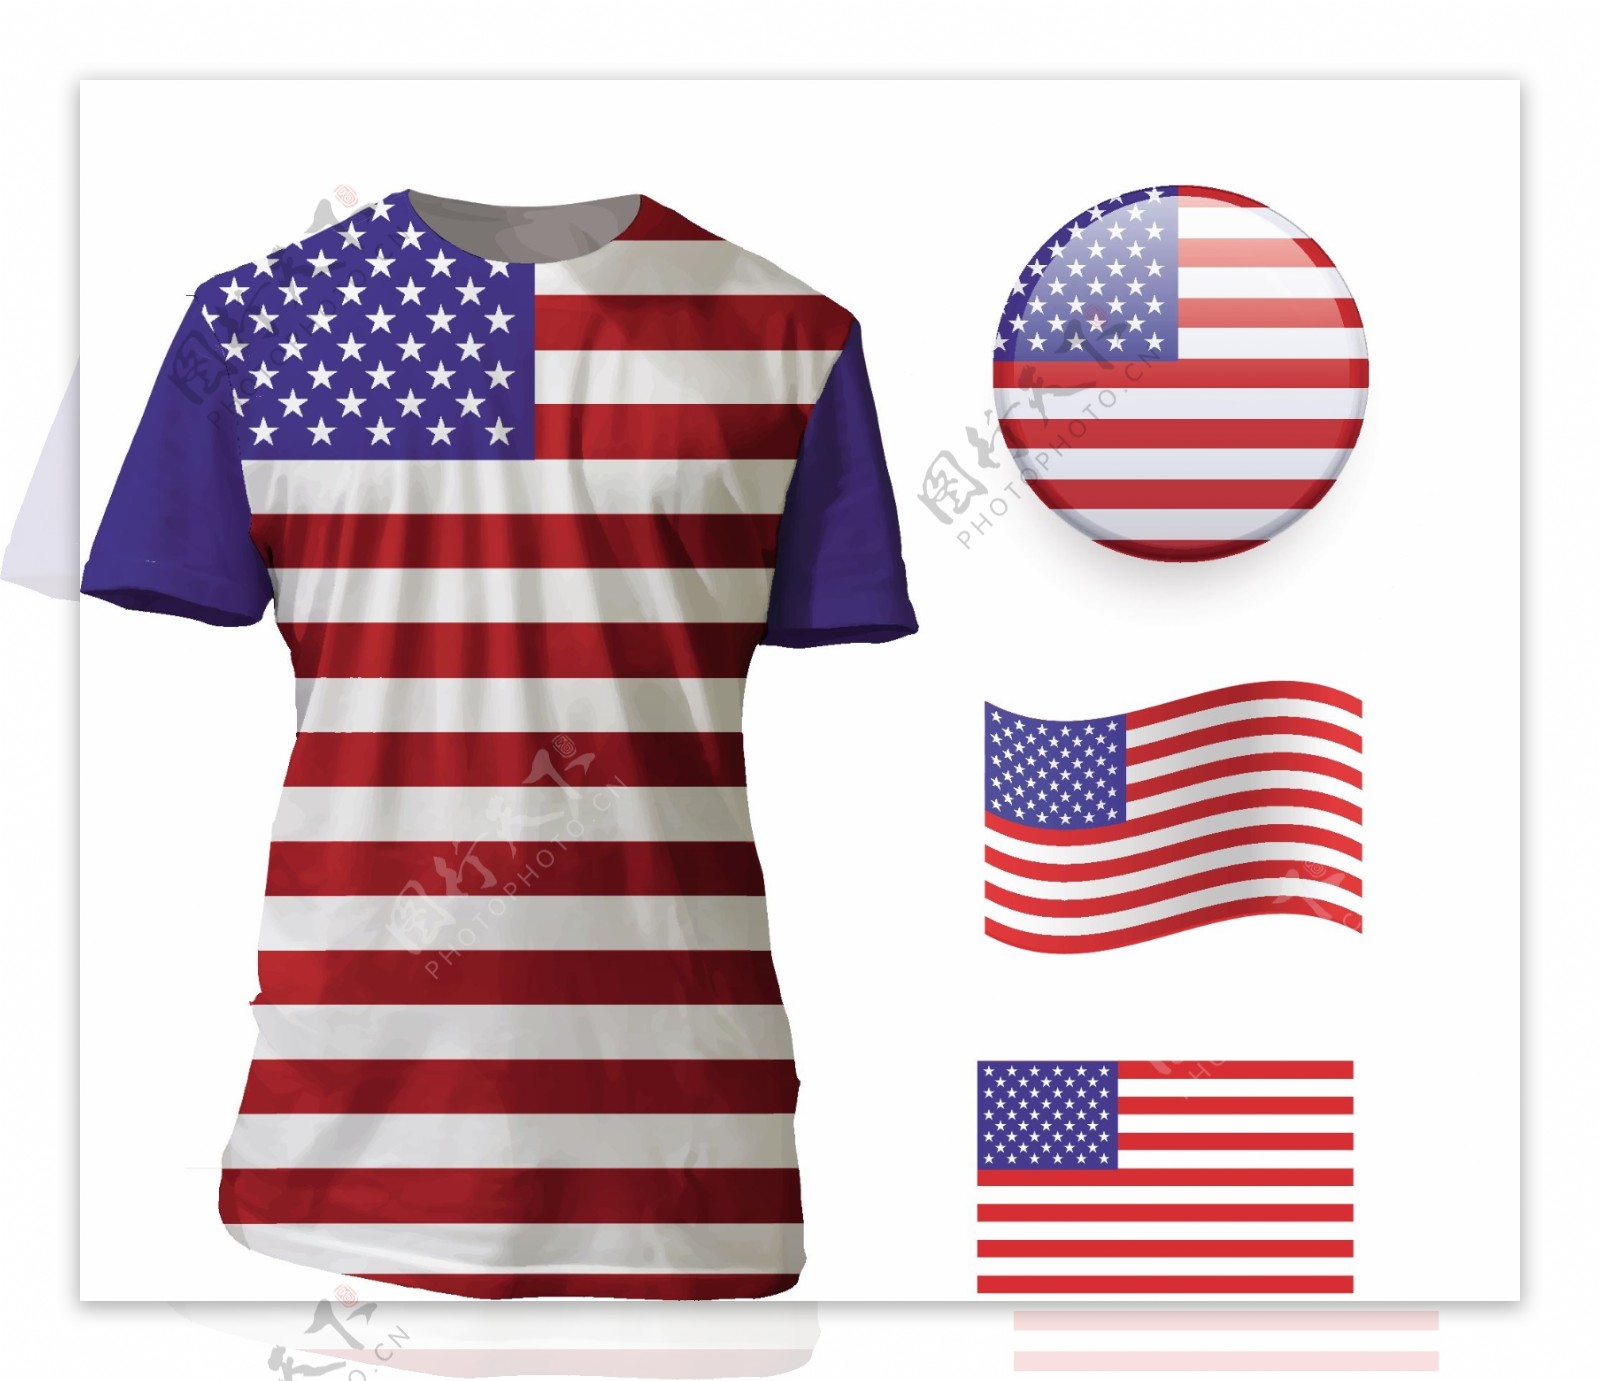 美国国旗t恤衫模板矢量素材